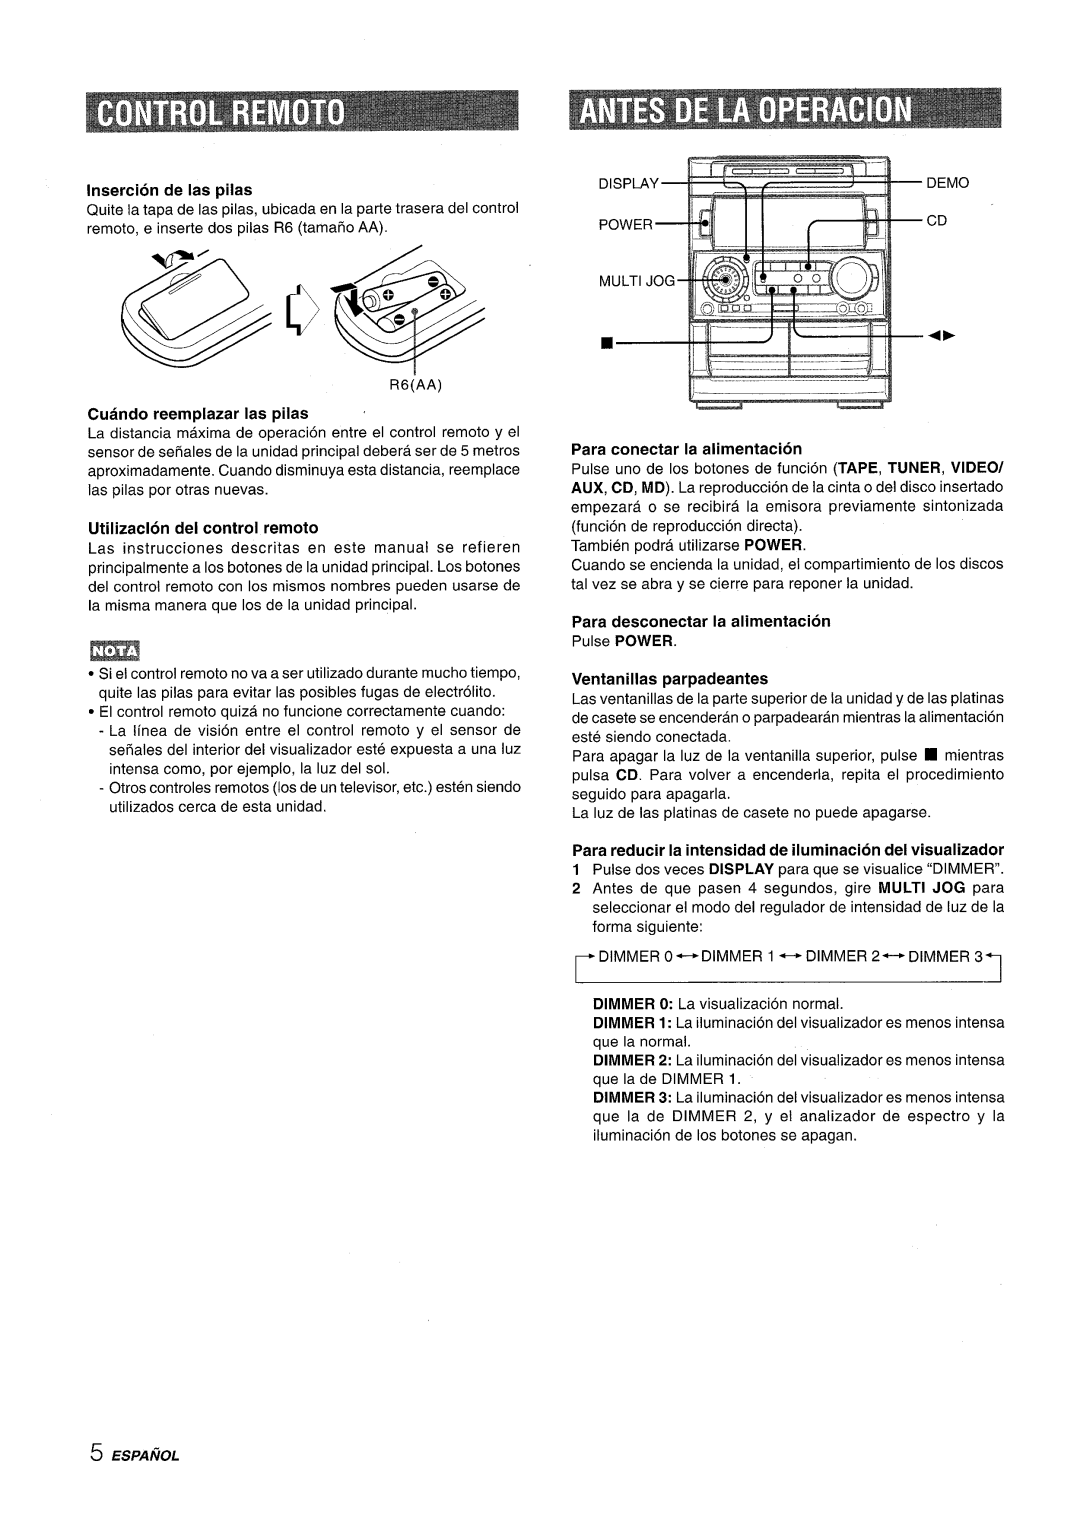 Aiwa NSX-A909 manual hi==, lnsercion de Ias pilas, Cuando reemplazar Ias pilas, Utilizaclon dei control remoto 